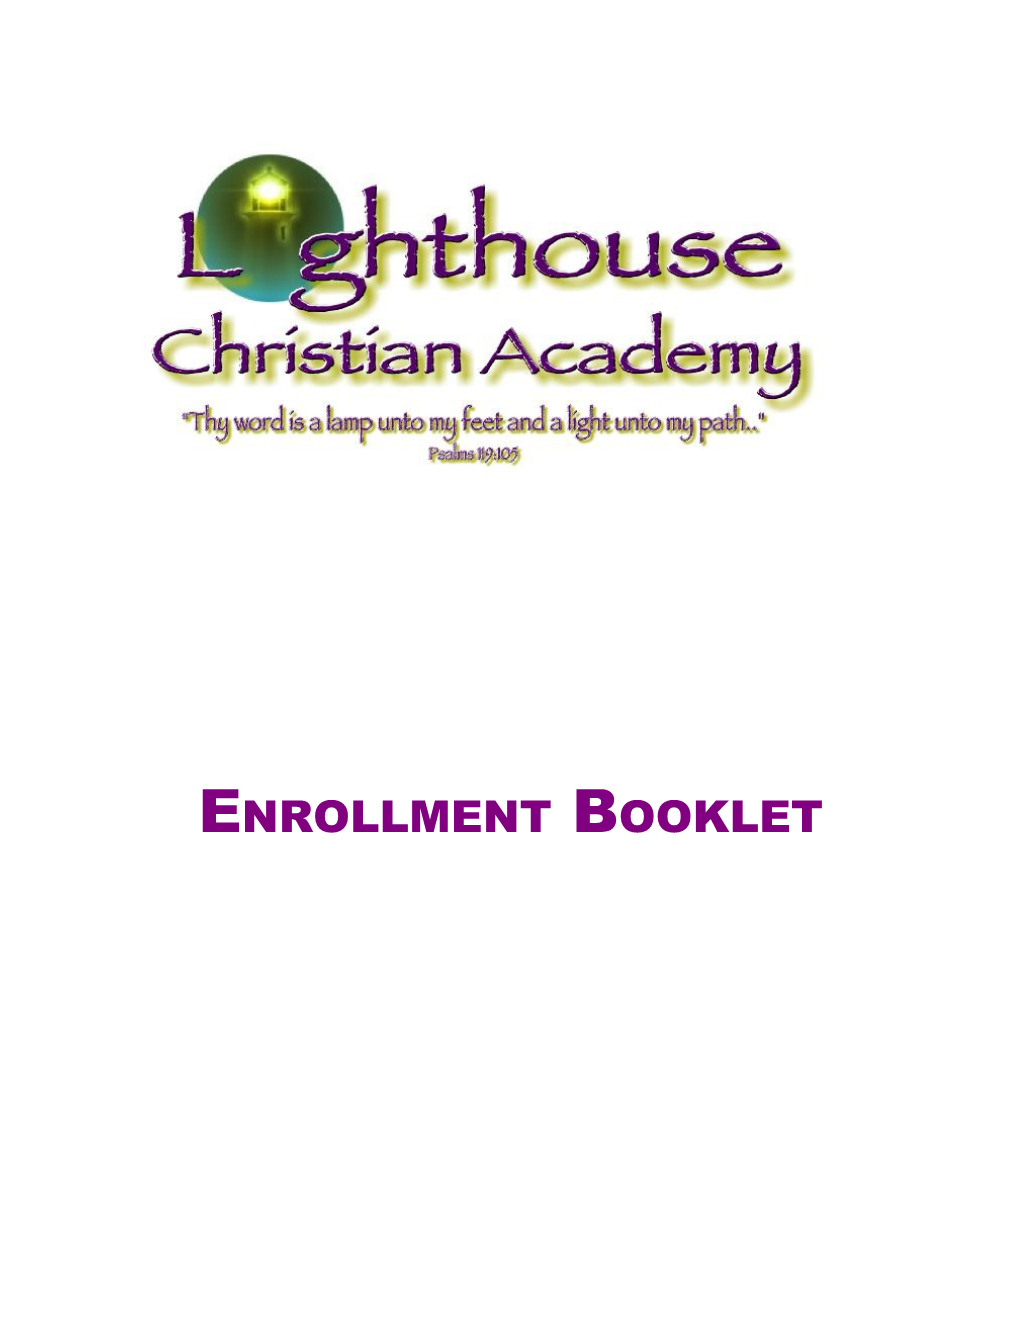 Enrollment Booklet